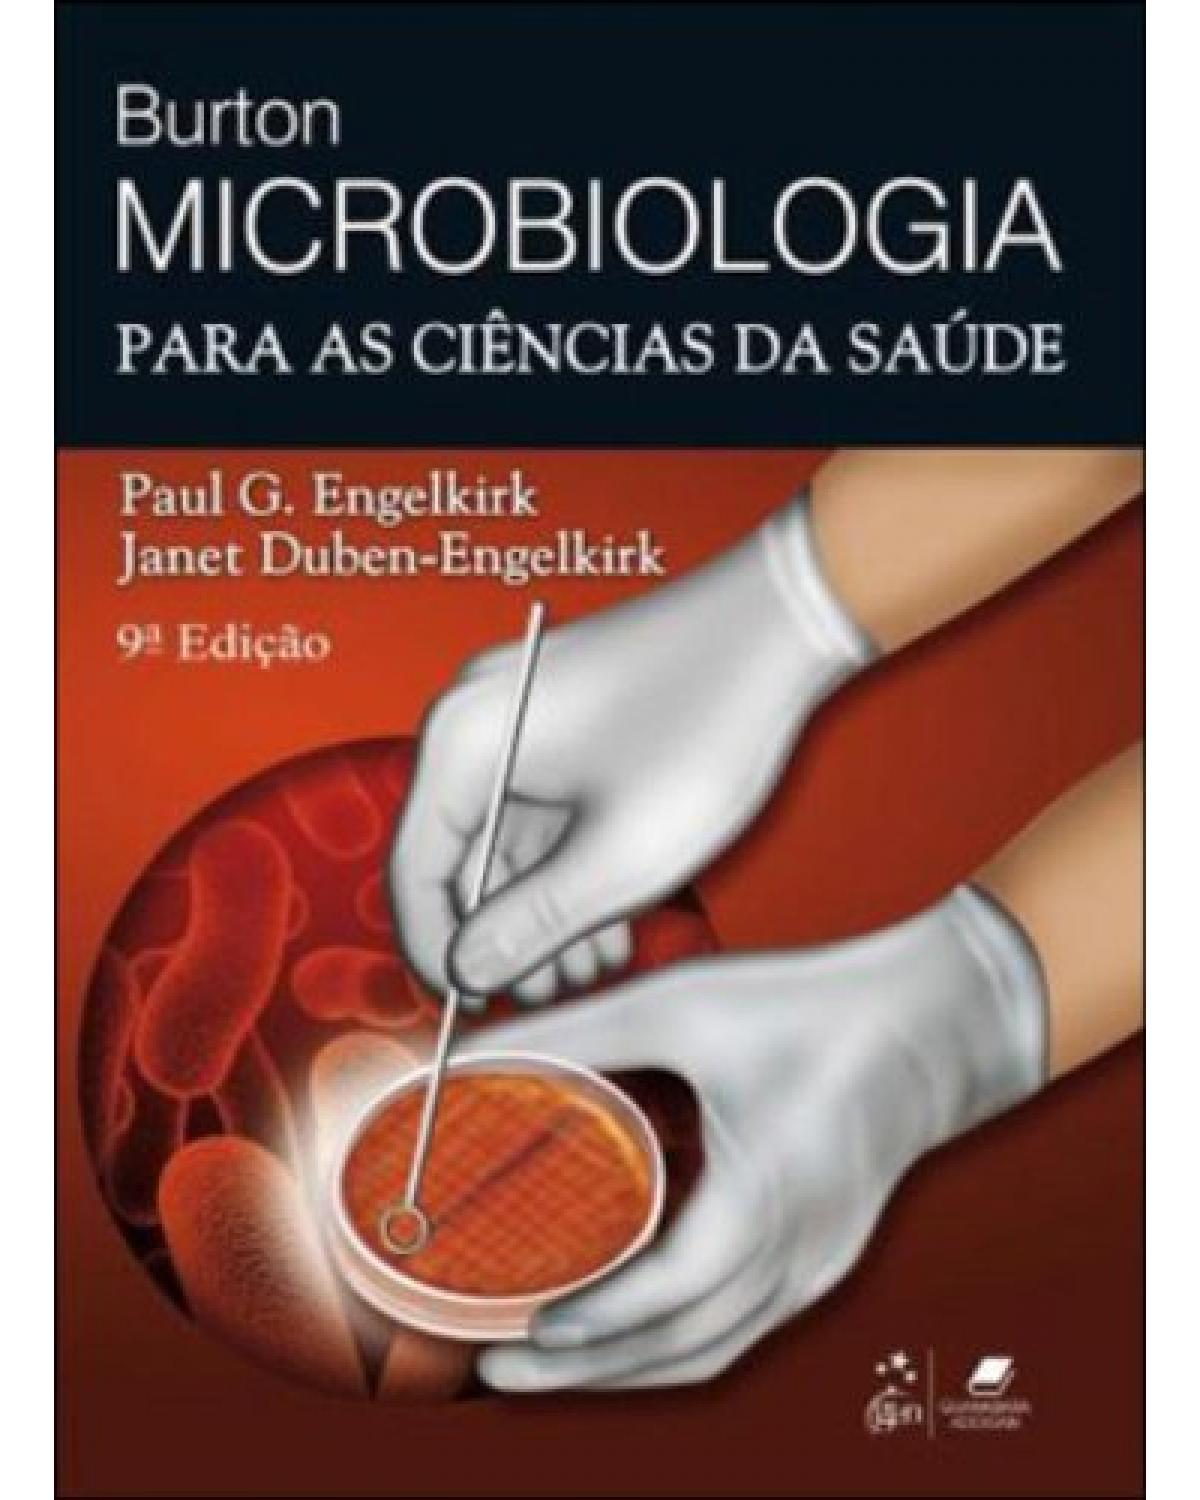 Burton - Microbiologia para as ciências da saúde - 9ª Edição | 2012